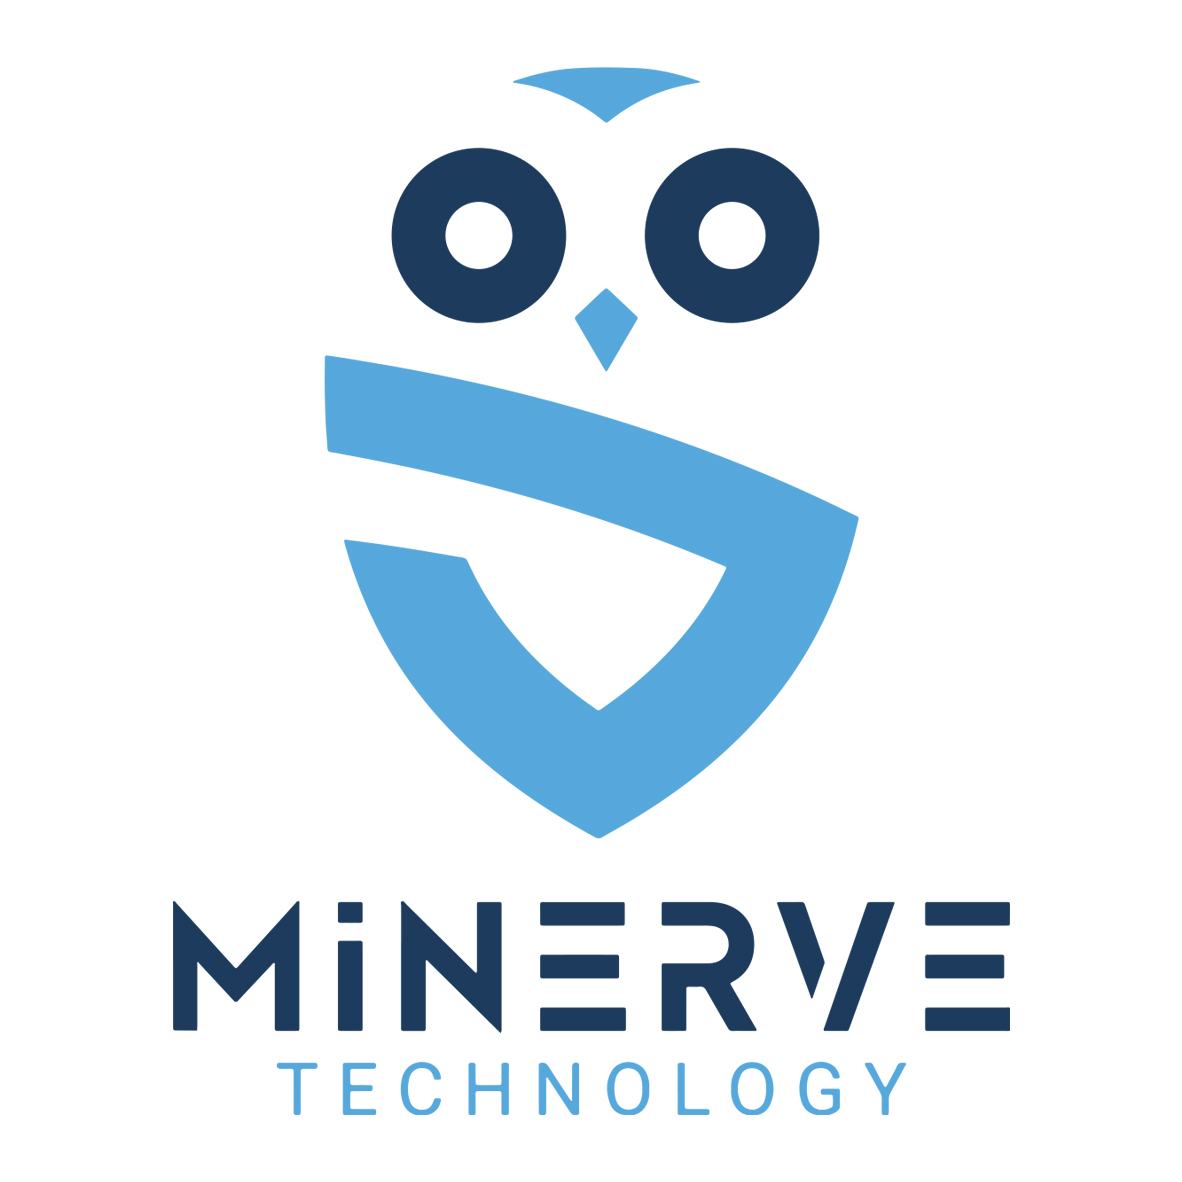 Minerve technology